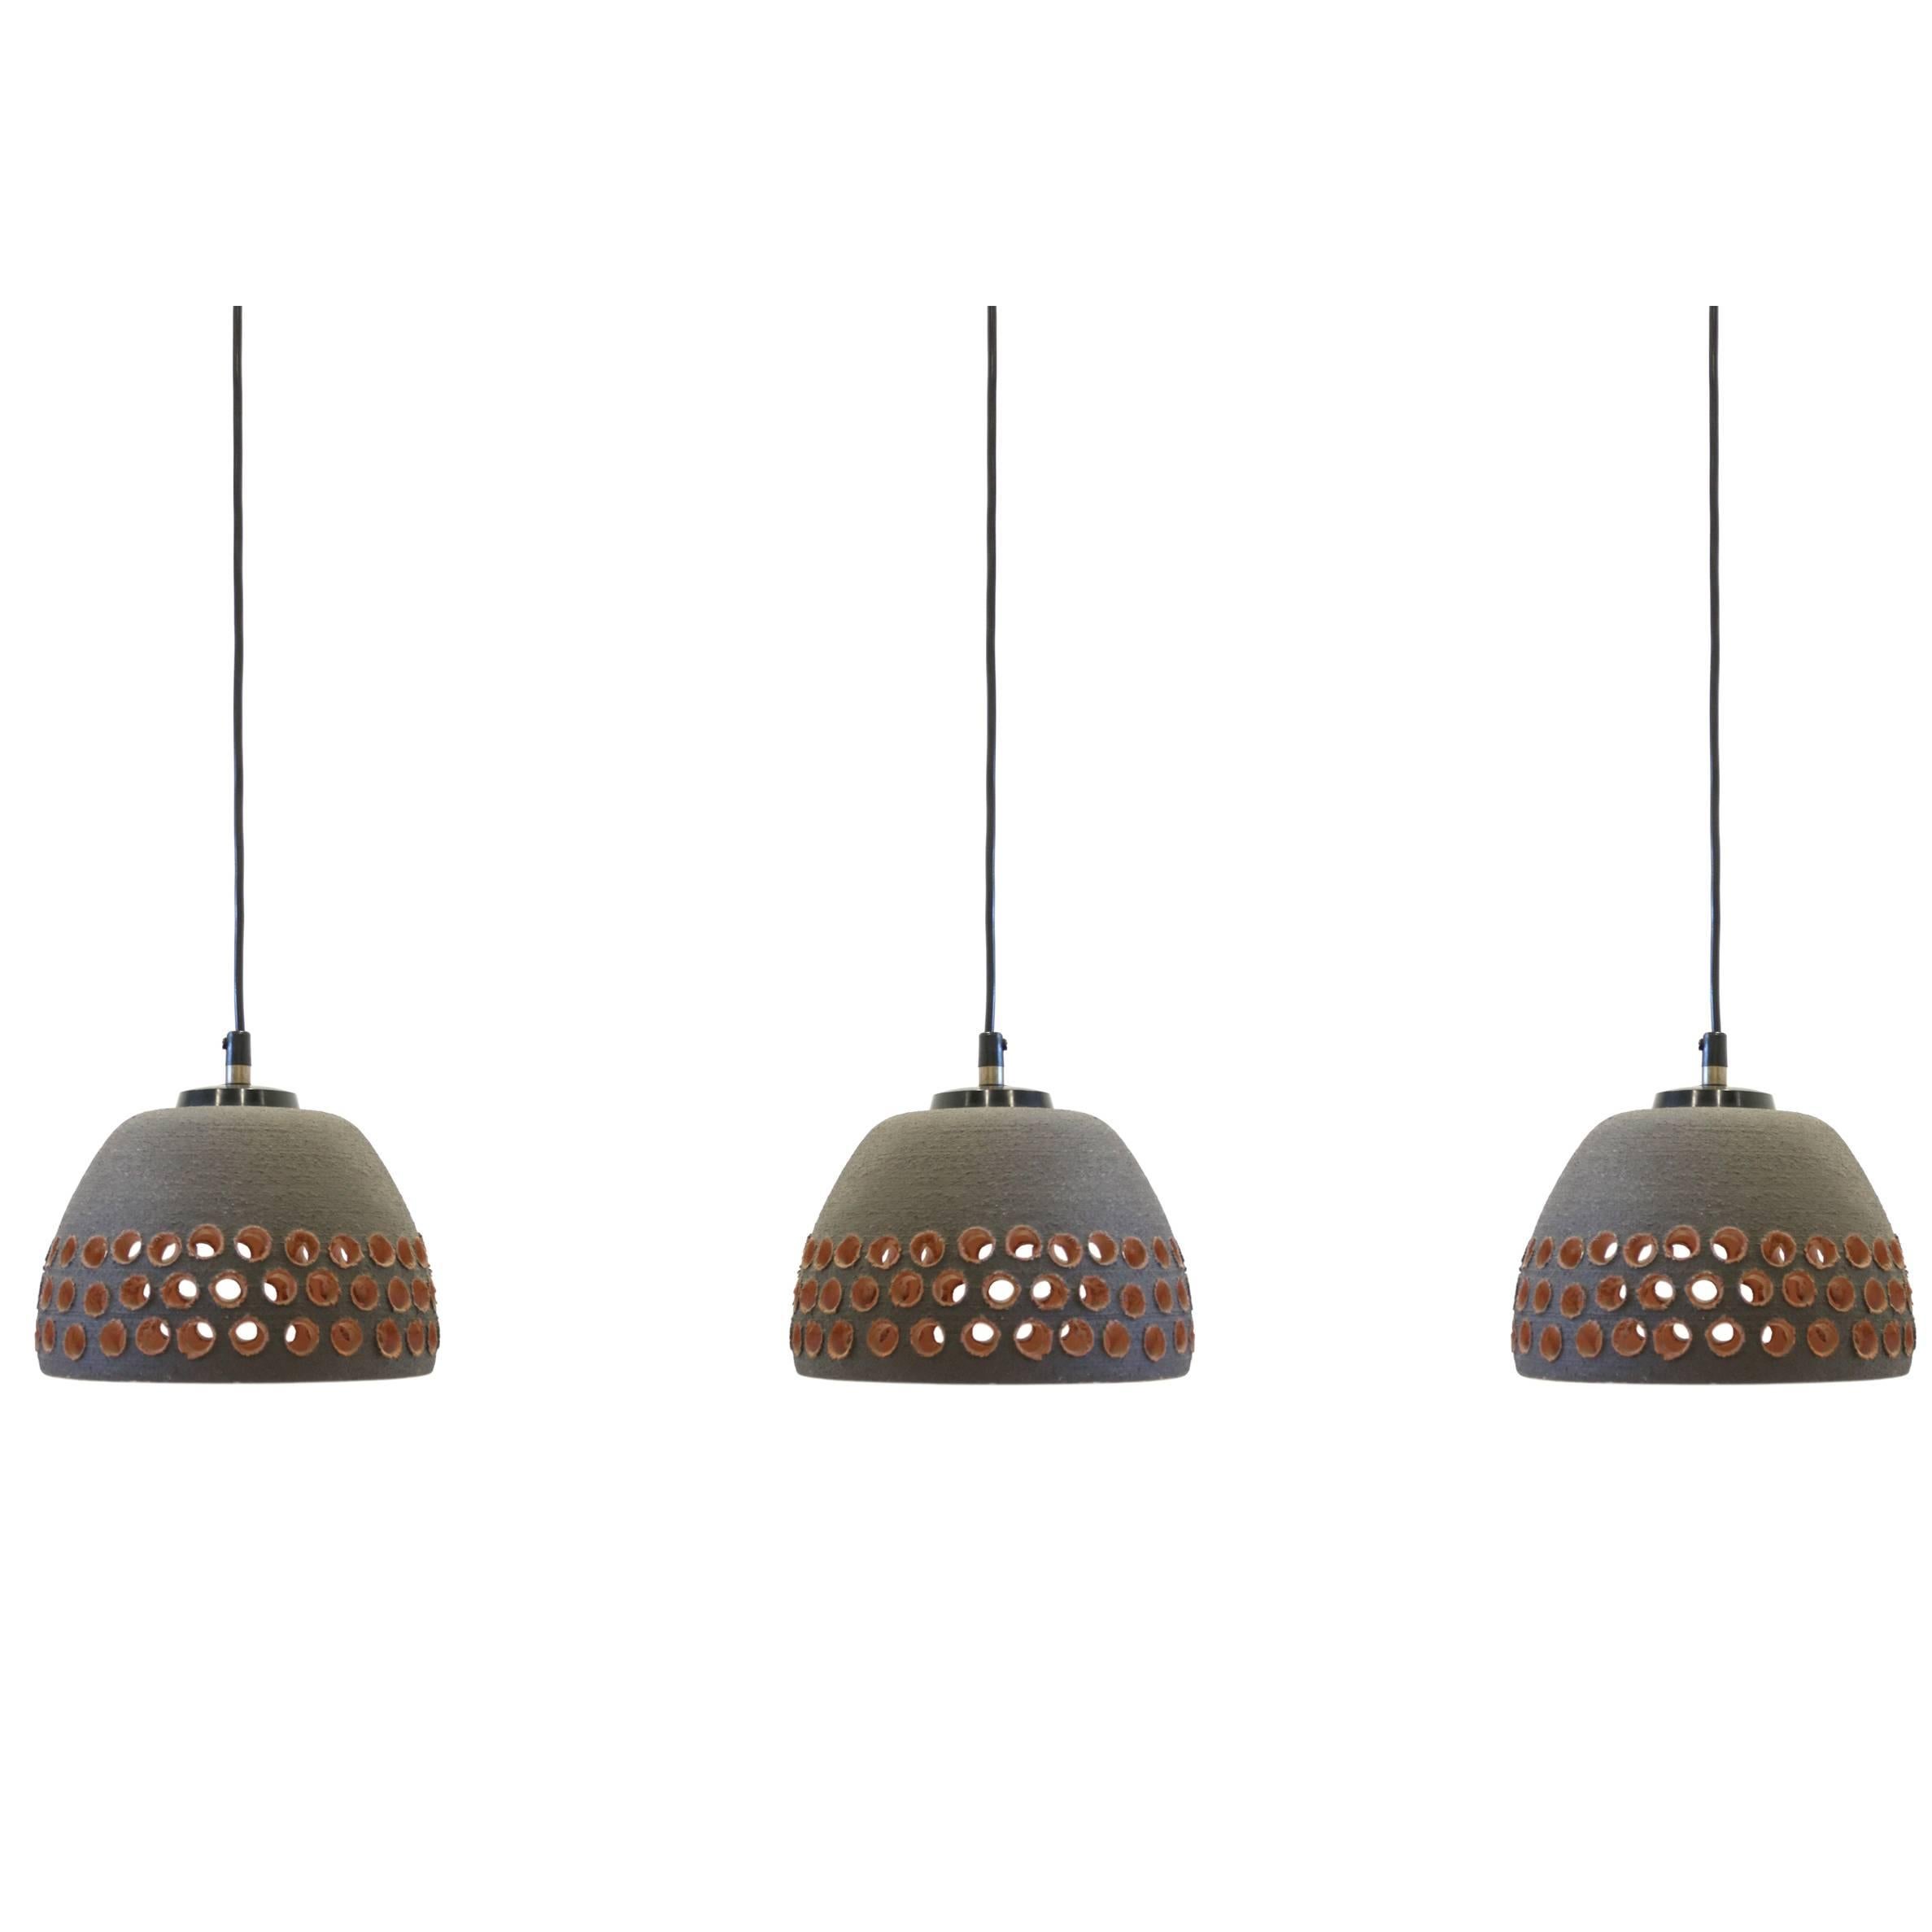 Set of Three Ceramic Ceiling Lamps, 1970s